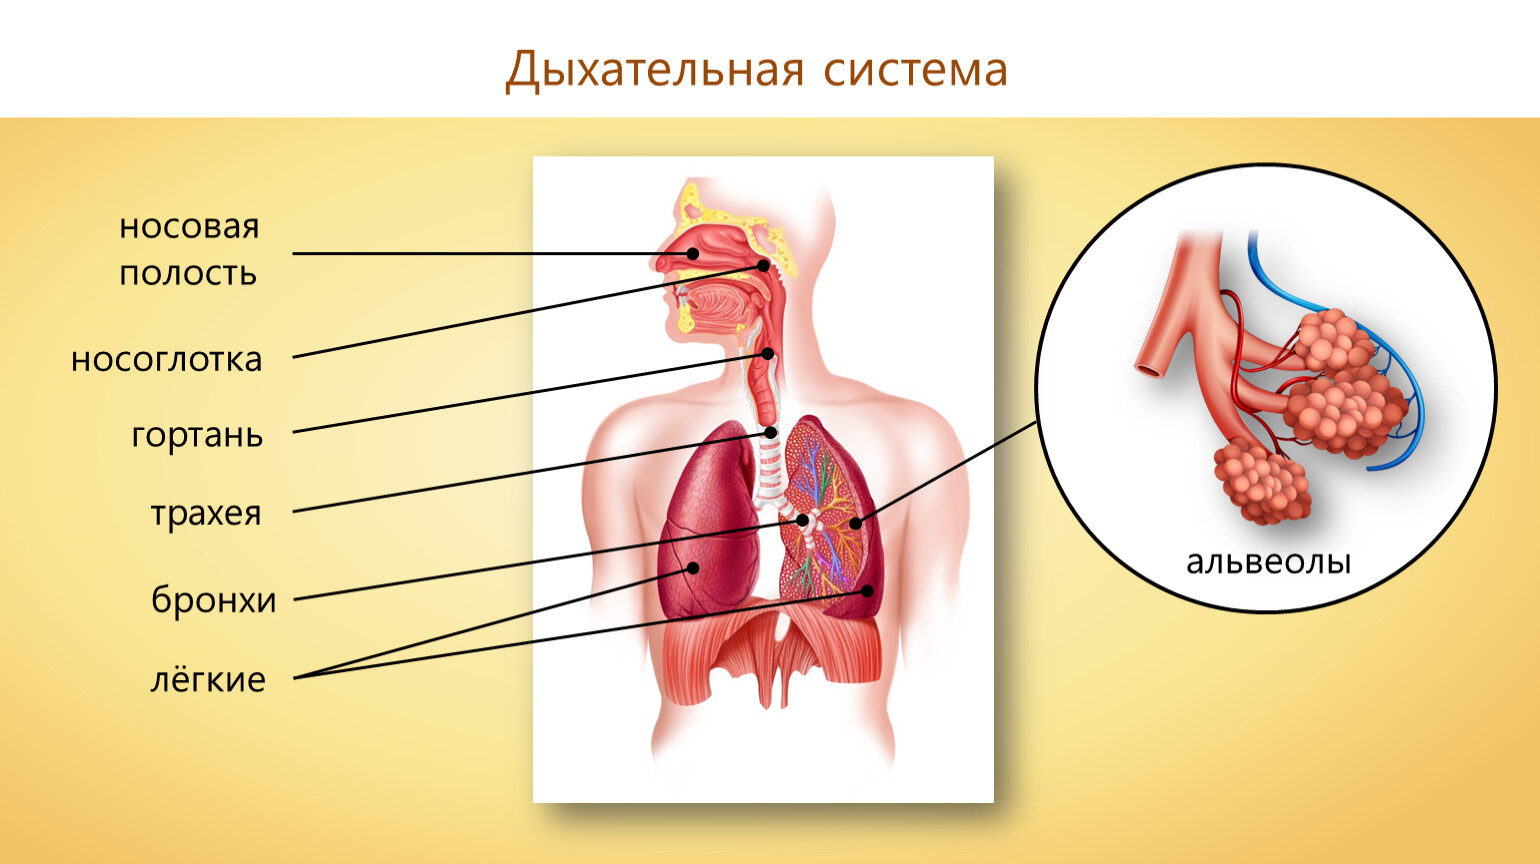 Носоглотка бронхи гортань носовая полость легкие трахея. Дыхательная система. Бронхи альвеолы дыхательная система. Дыхательная система человека схема. Органы дыхания альвеолы.